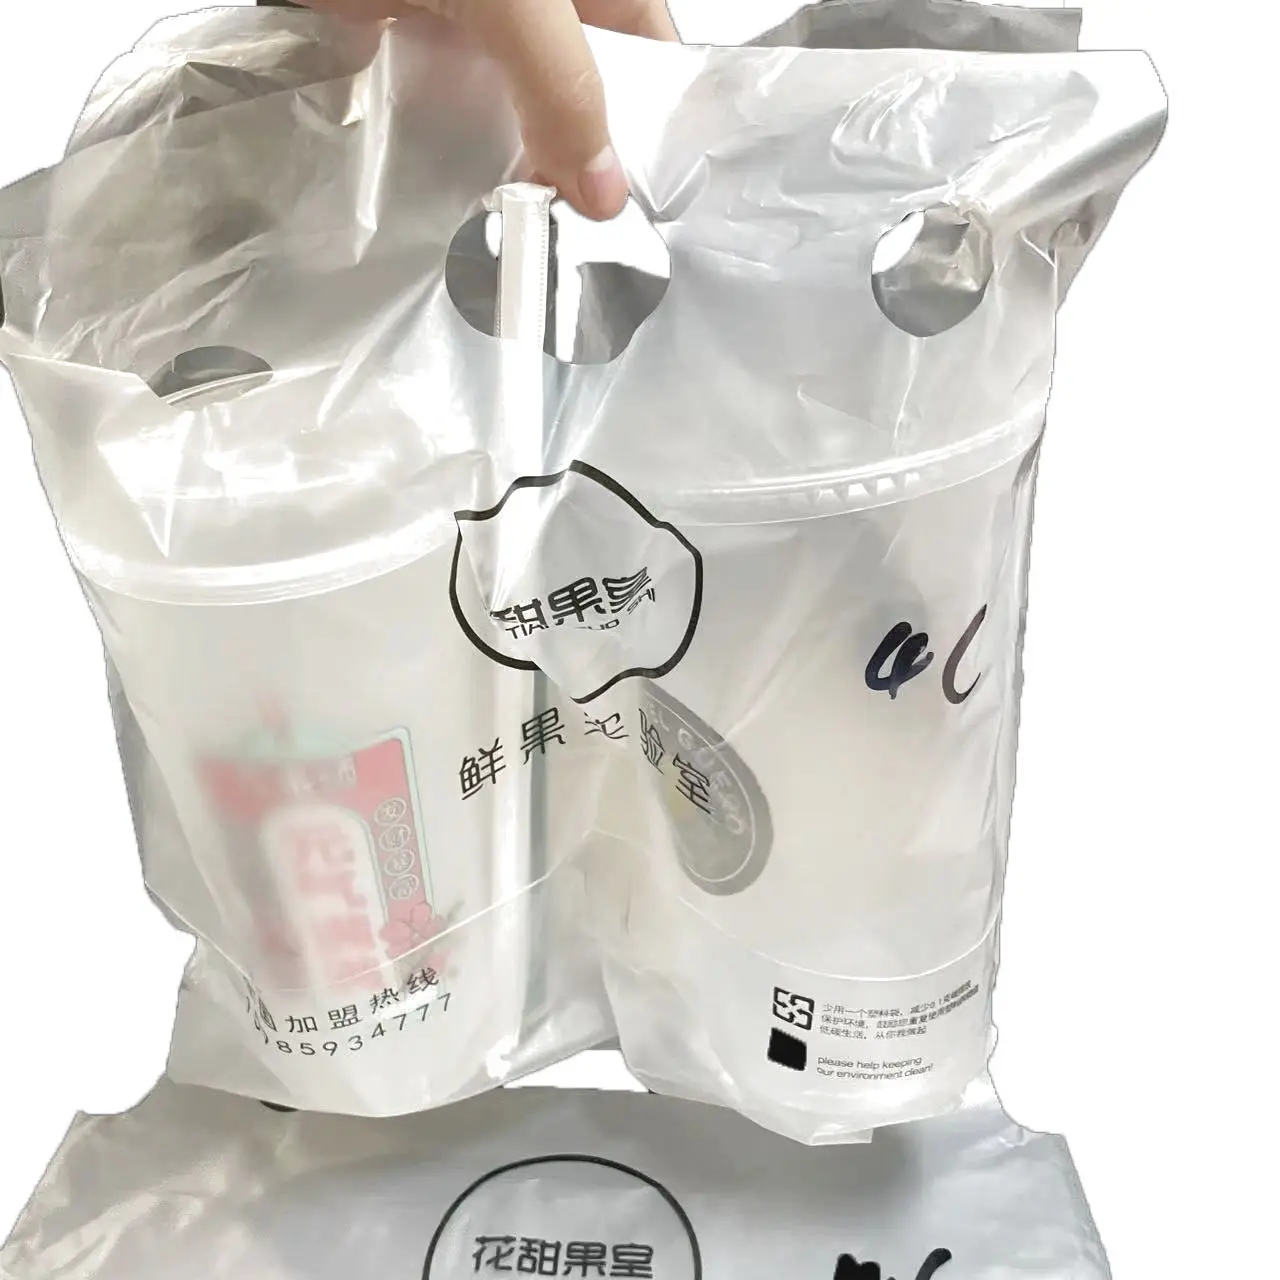 Sp2368 कस्टमाइज्ड प्रिंट पेय प्लास्टिक बैग कॉफी टेवे प्लास्टिक बैग दूध चाय प्लास्टिक बैग